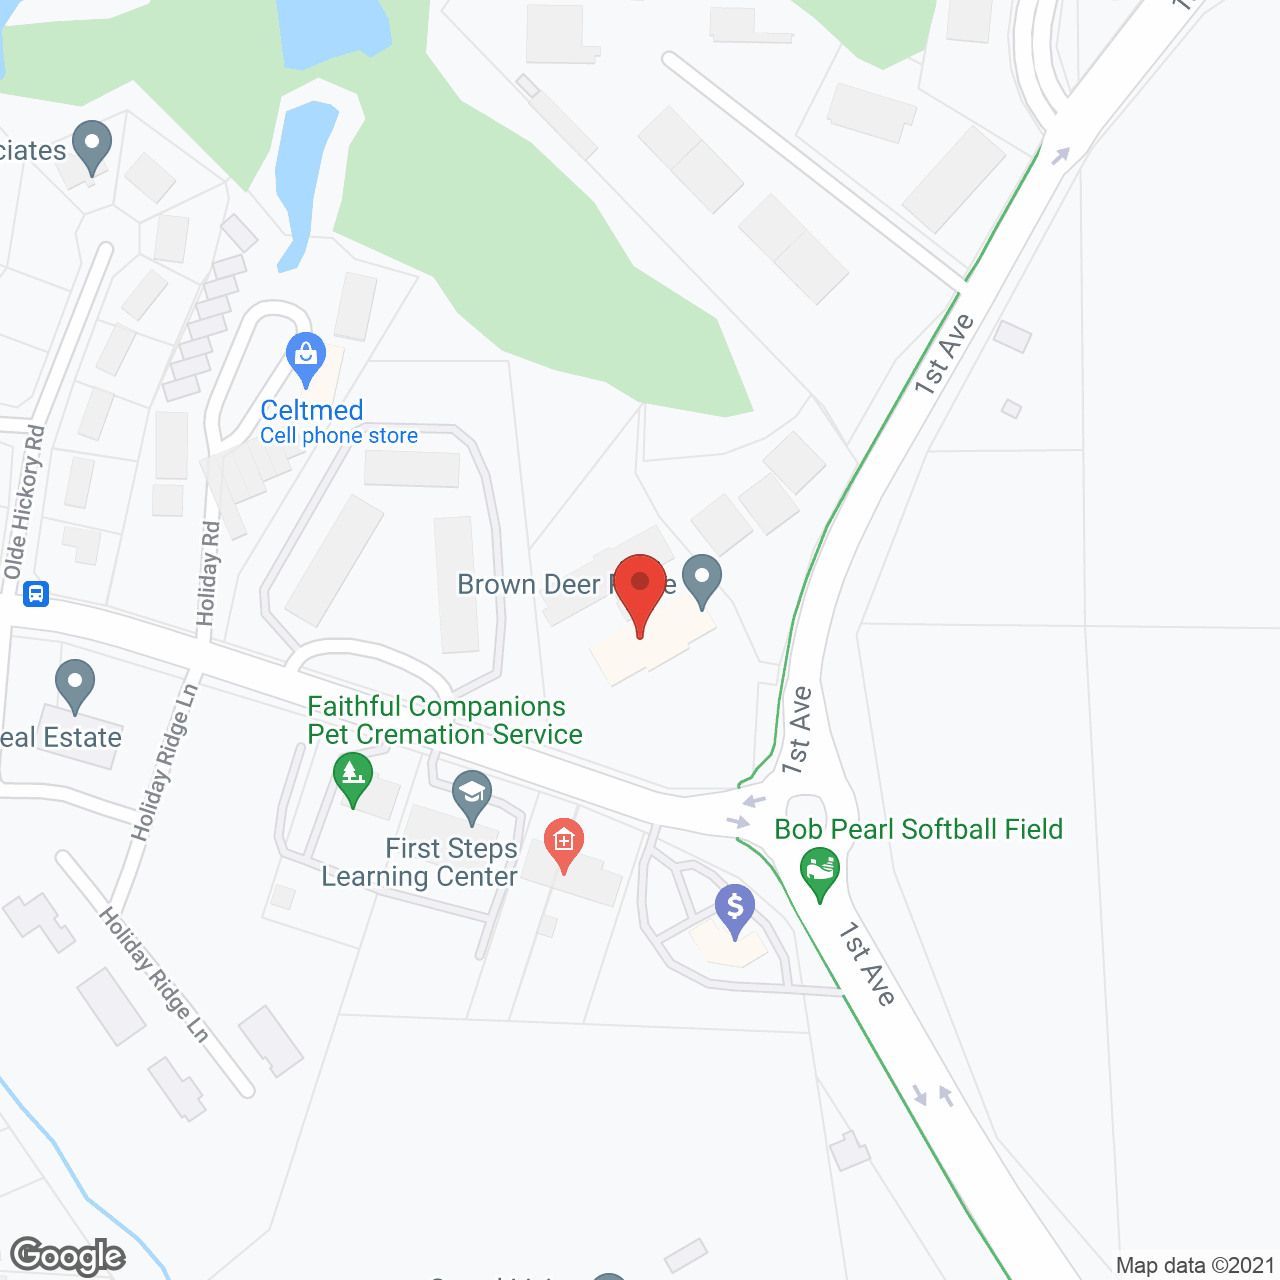 Brown Deer Place in google map